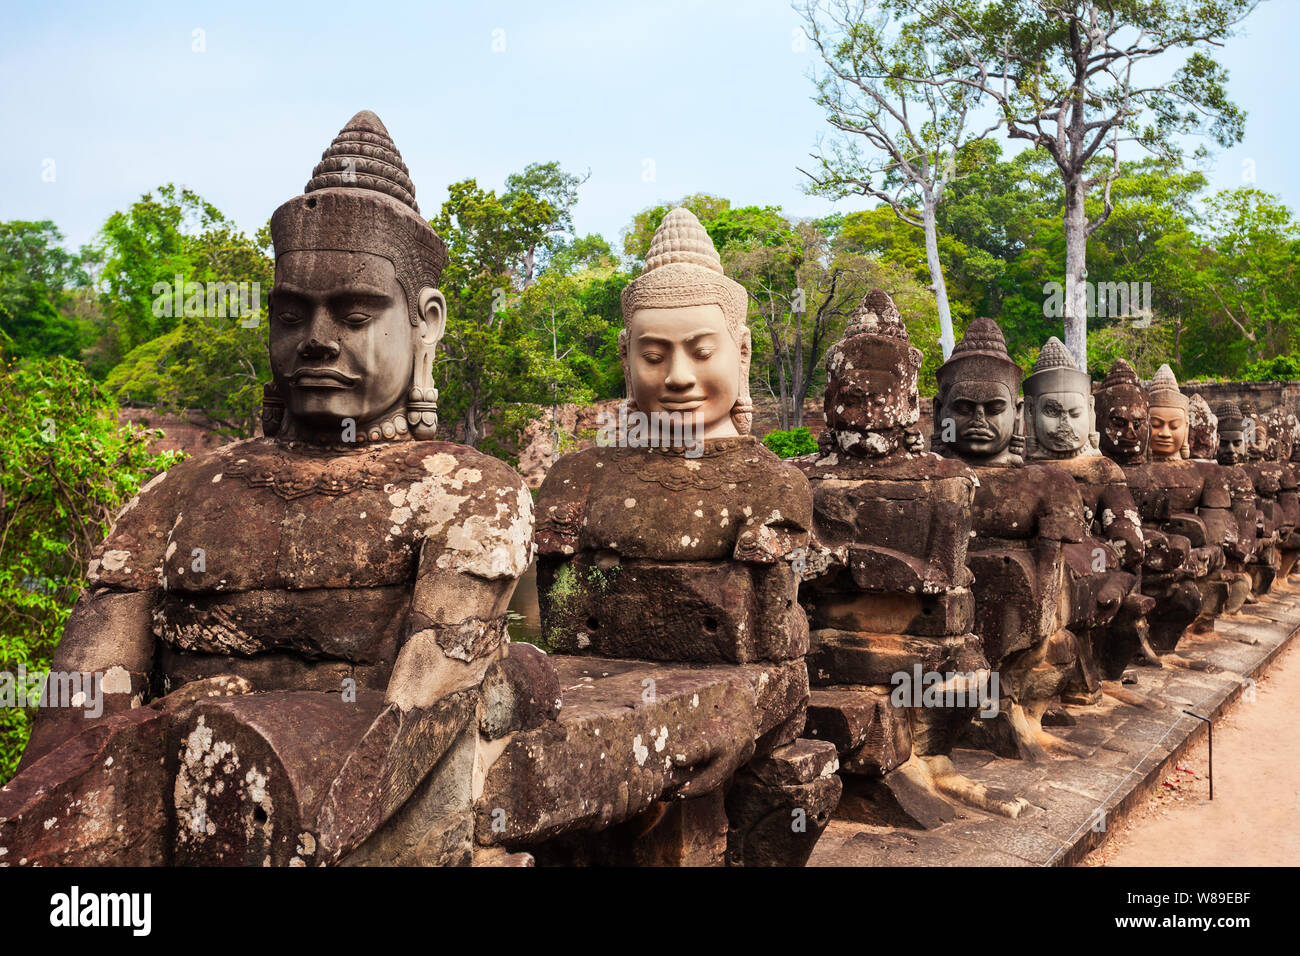 Visages de pierre à la porte d'entrée du temple Bayon. Bayon est un célèbre temple Khmer à Angkor au Cambodge. Banque D'Images